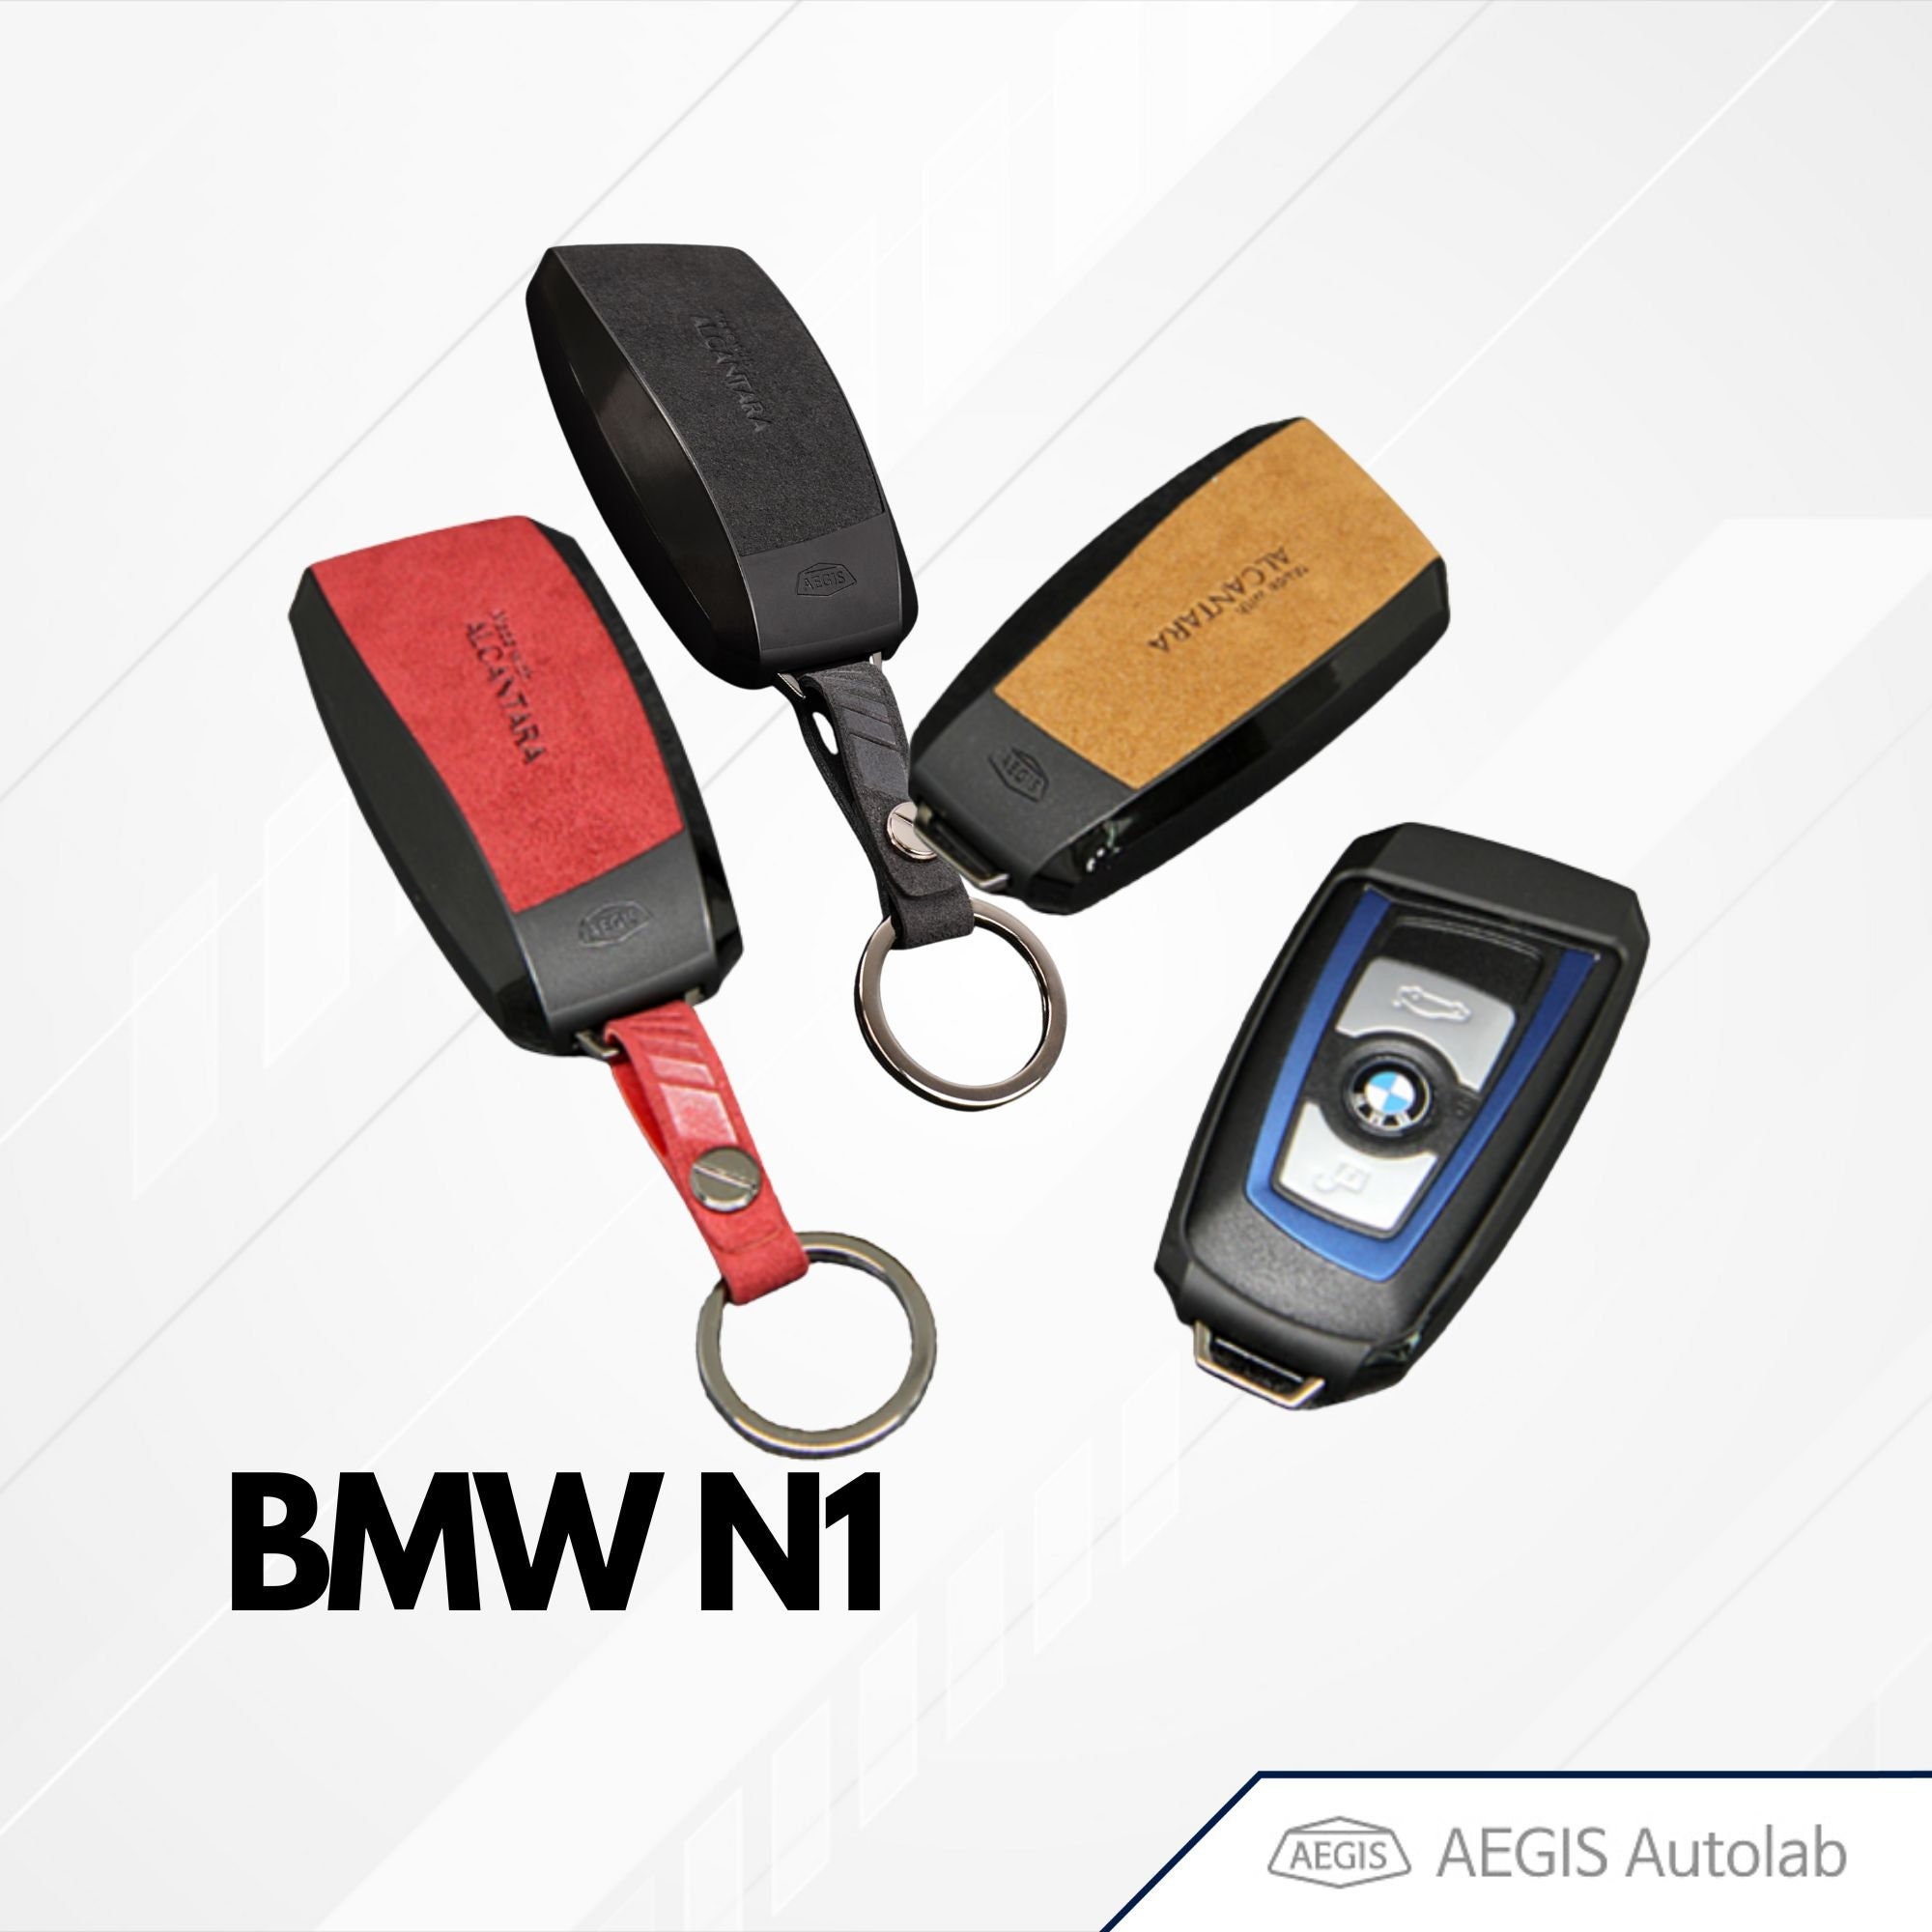 Custom BMW Car Keys Holder, Solid Wood Wall Mounted, Key Organizer